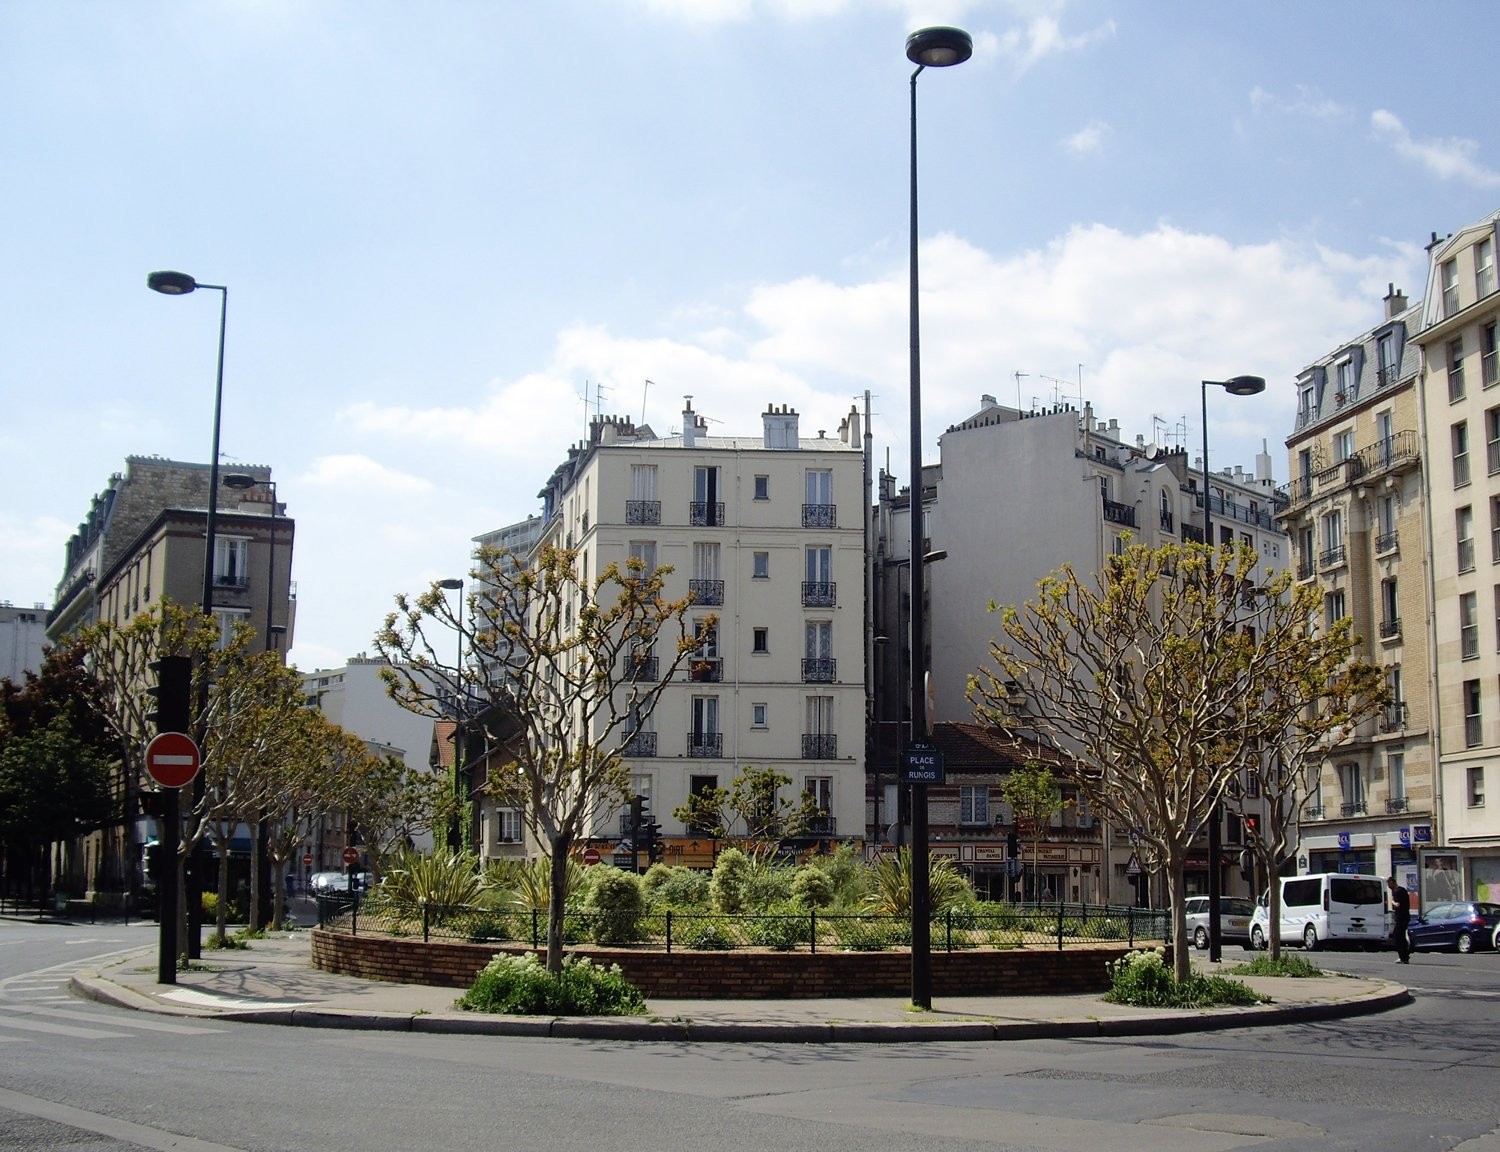 "L'immobilier dans le 13me arrondissement de paris"